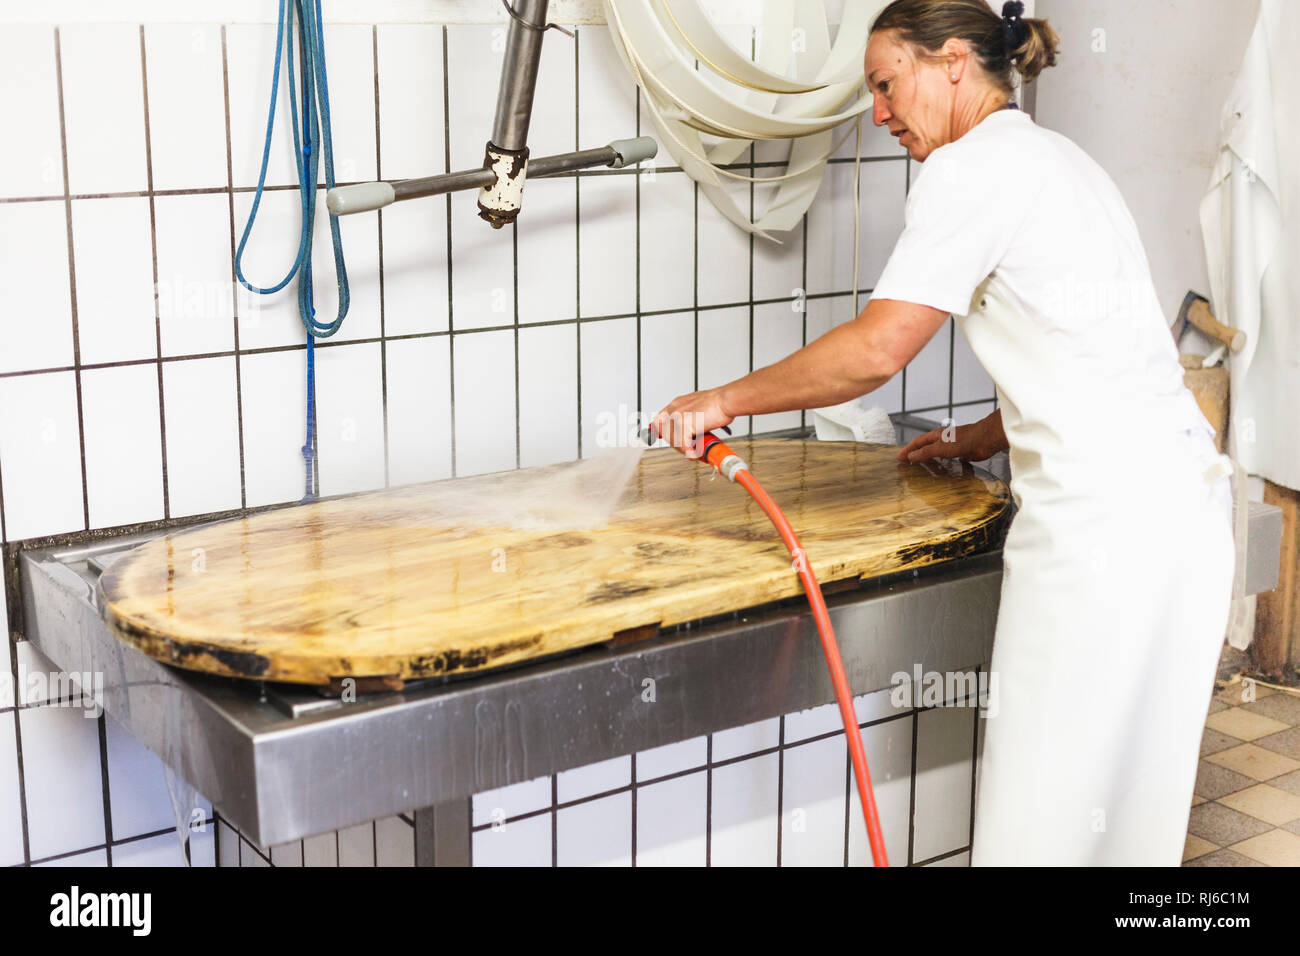 Die Sennerin verarbeitet frische Milch zu würzigem Alm-Käse,  Reinigung der für die Käseproduktion benötigen Gegenstände, Stock Photo